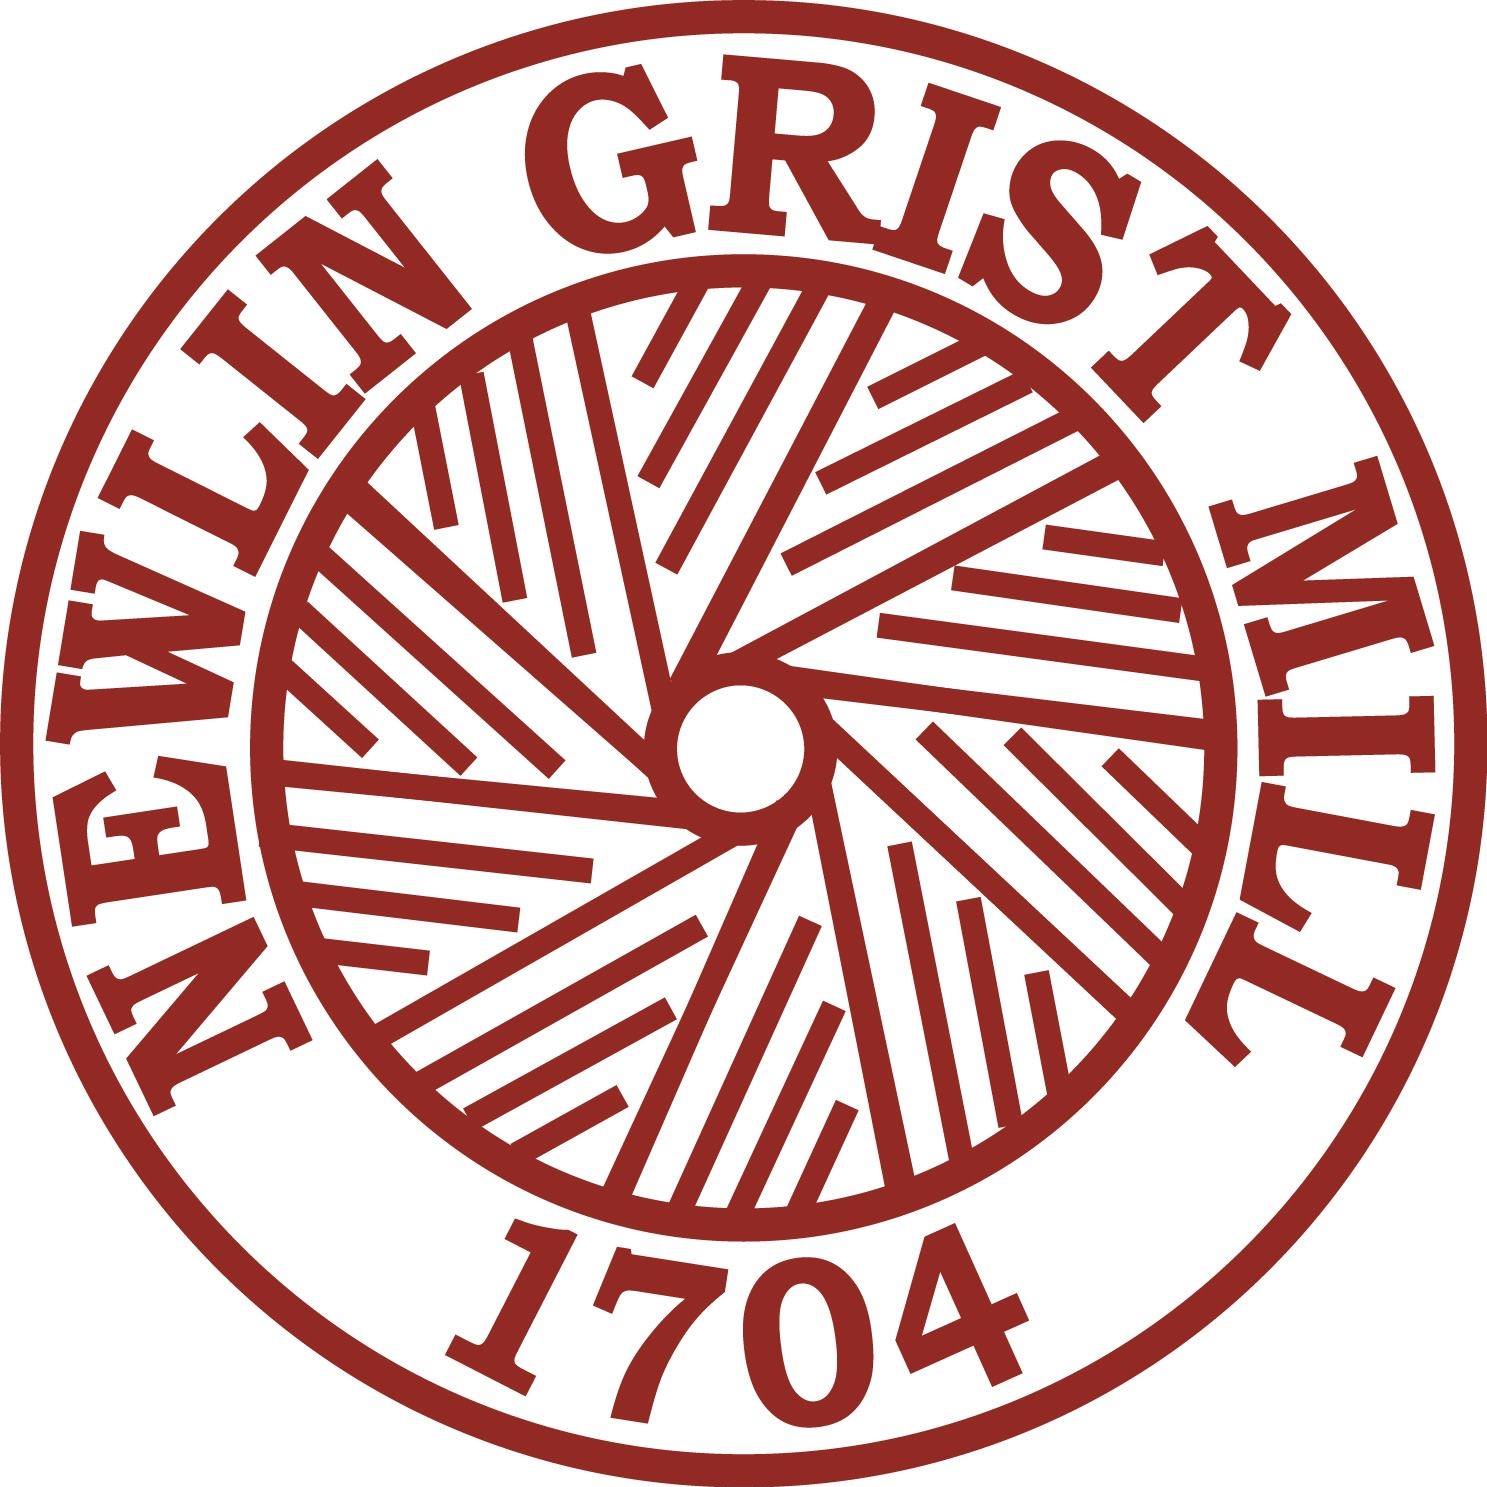 Newlin Grist Mill